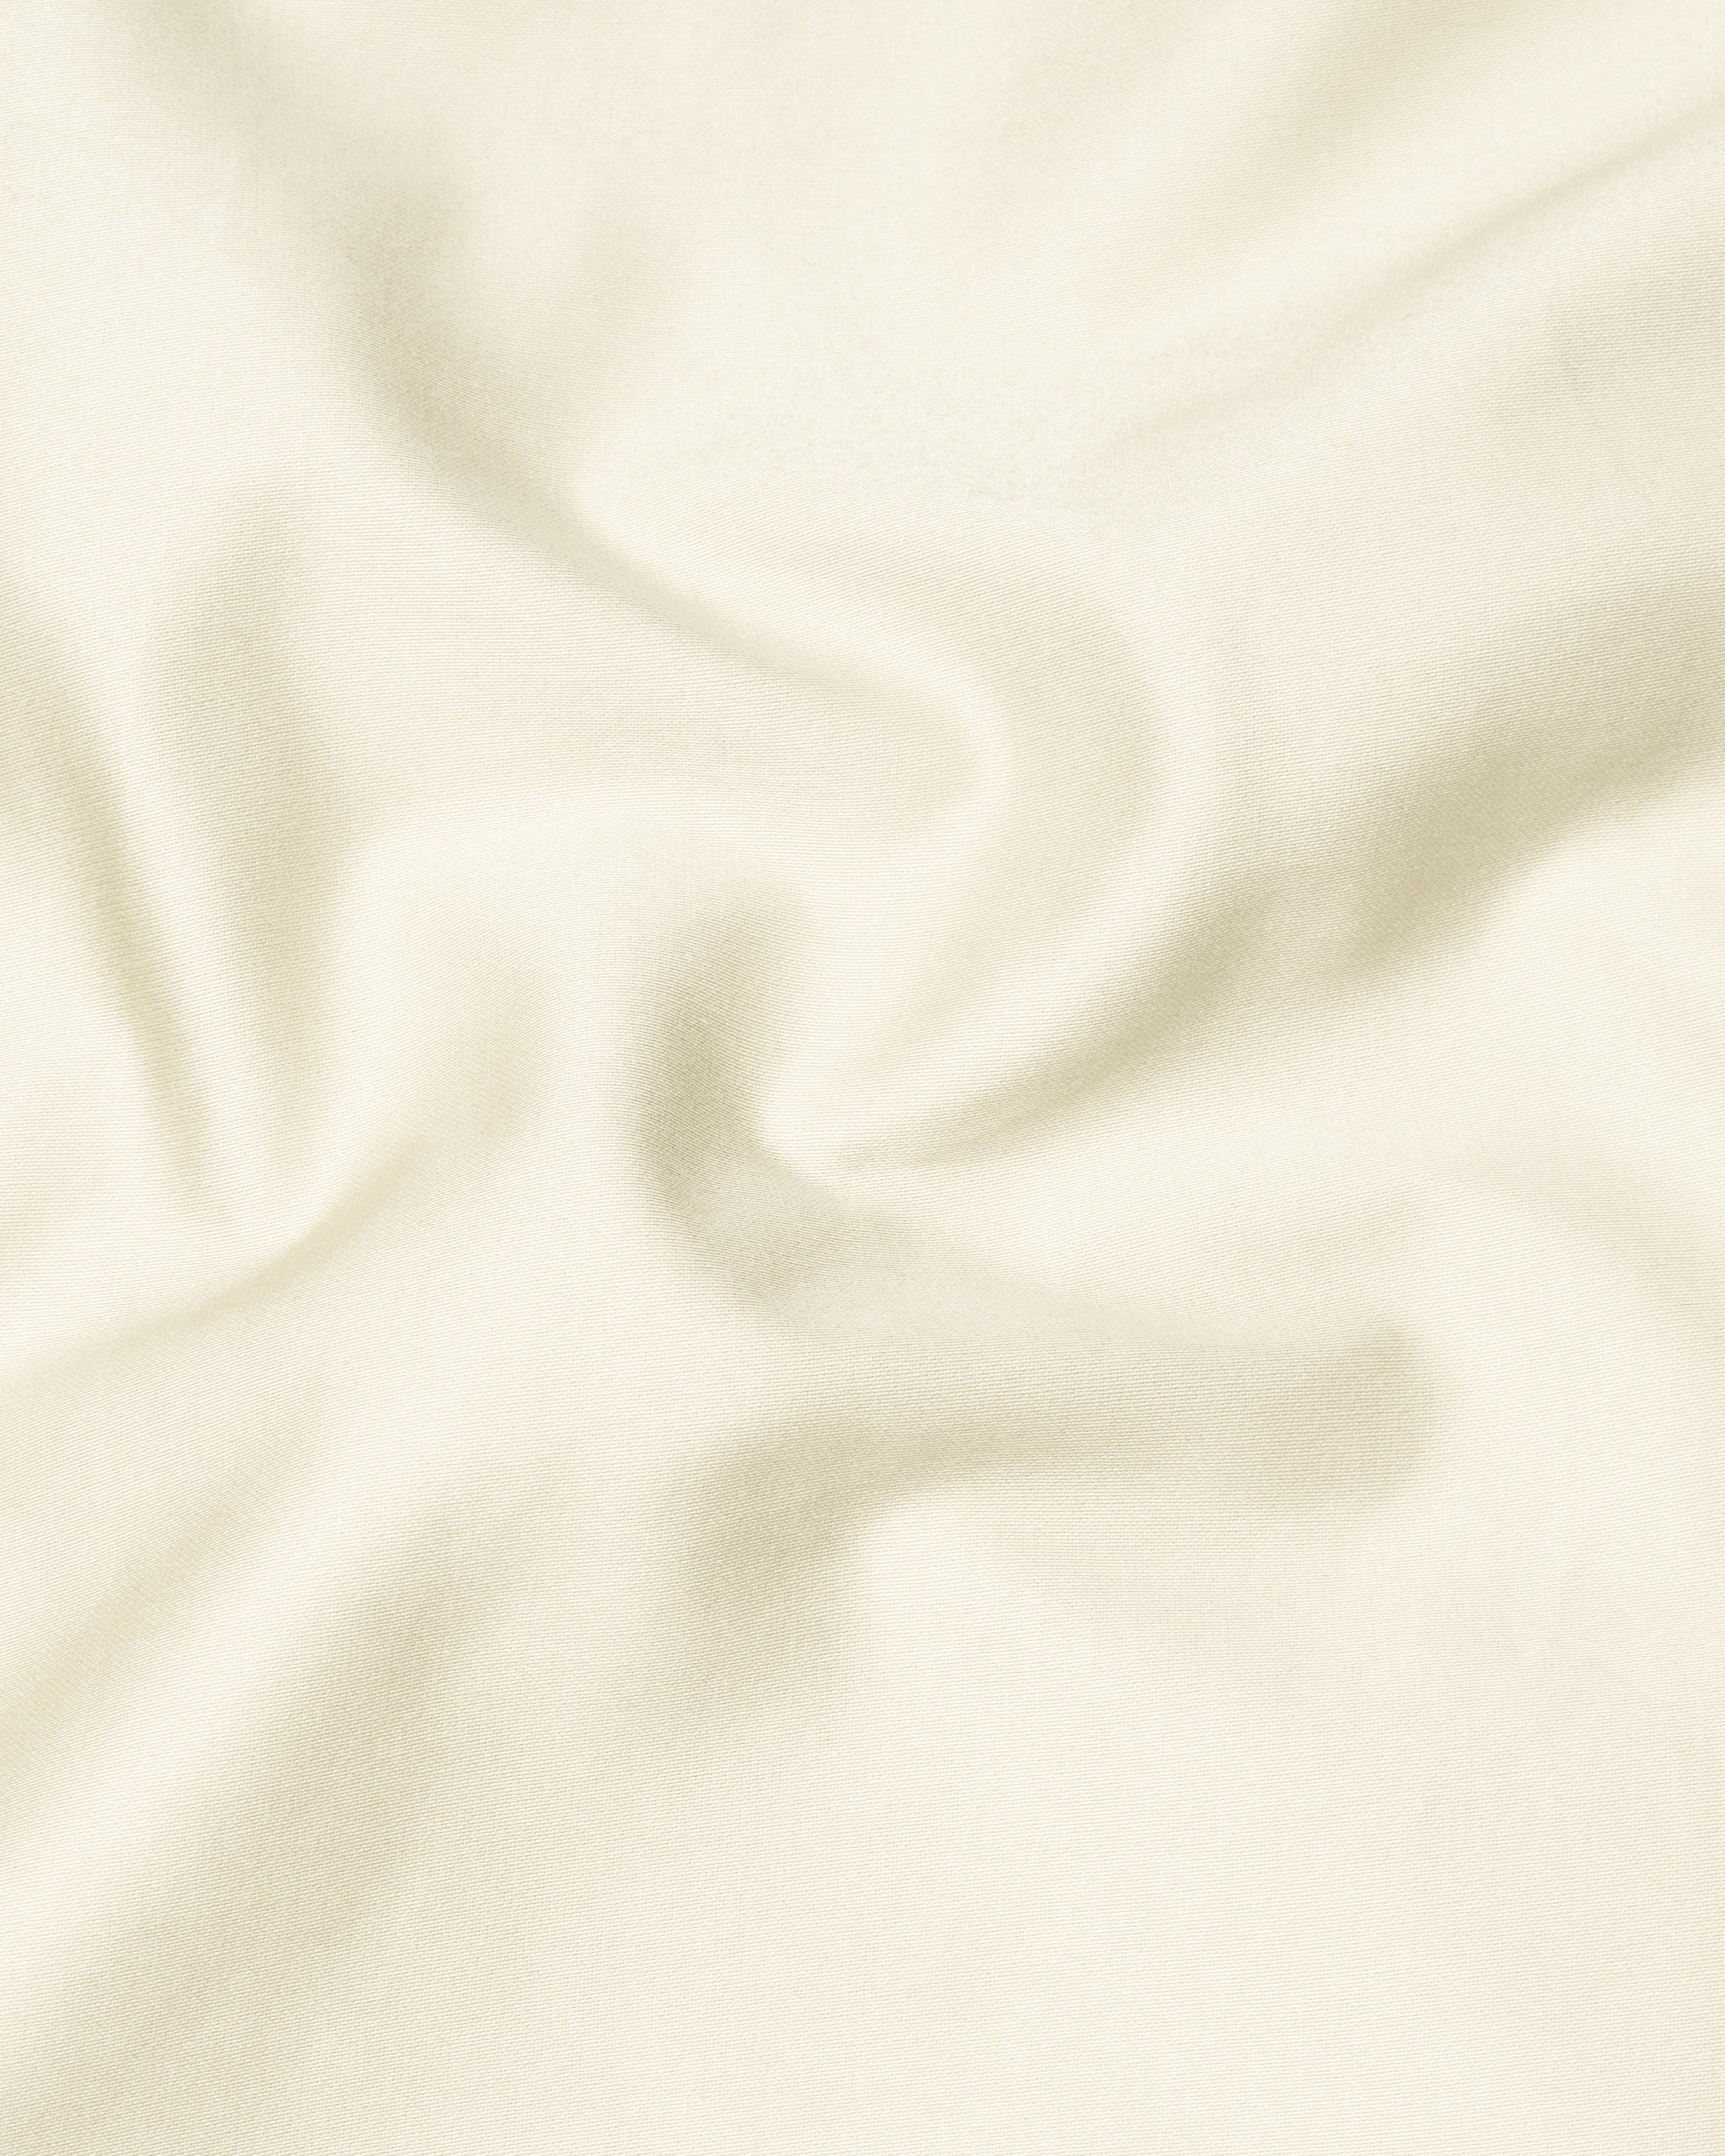 Merino Cream Stretchable Premium Cotton traveler Pant T2687-28, T2687-30, T2687-32, T2687-34, T2687-36, T2687-38, T2687-40, T2687-42, T2687-44